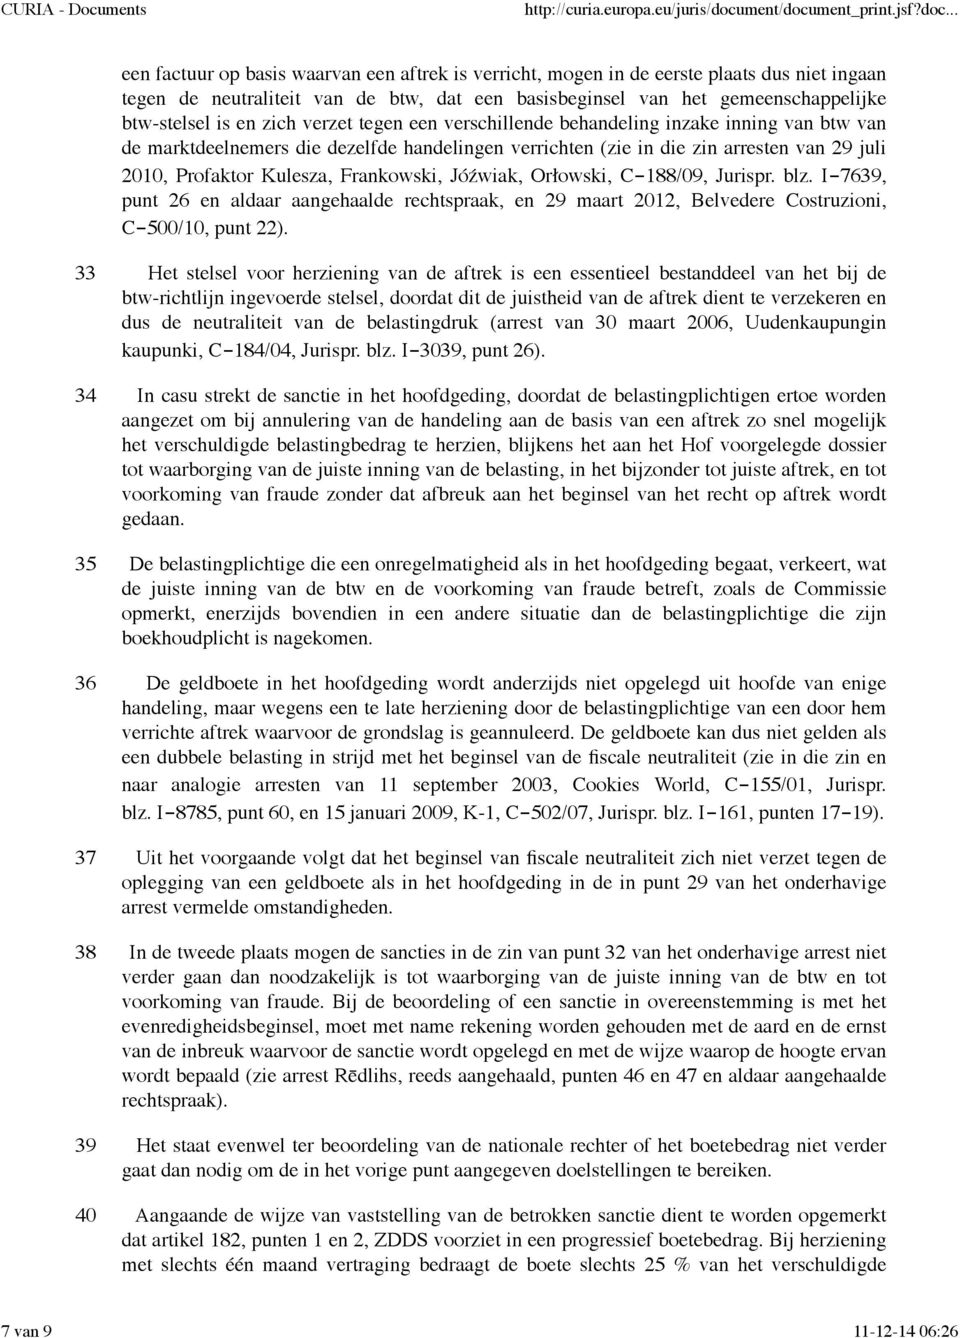 Frankowski, Jóźwiak, Orłowski, C-188/09, Jurispr. blz. I-7639, punt 26 en aldaar aangehaalde rechtspraak, en 29 maart 2012, Belvedere Costruzioni, C-500/10, punt 22).